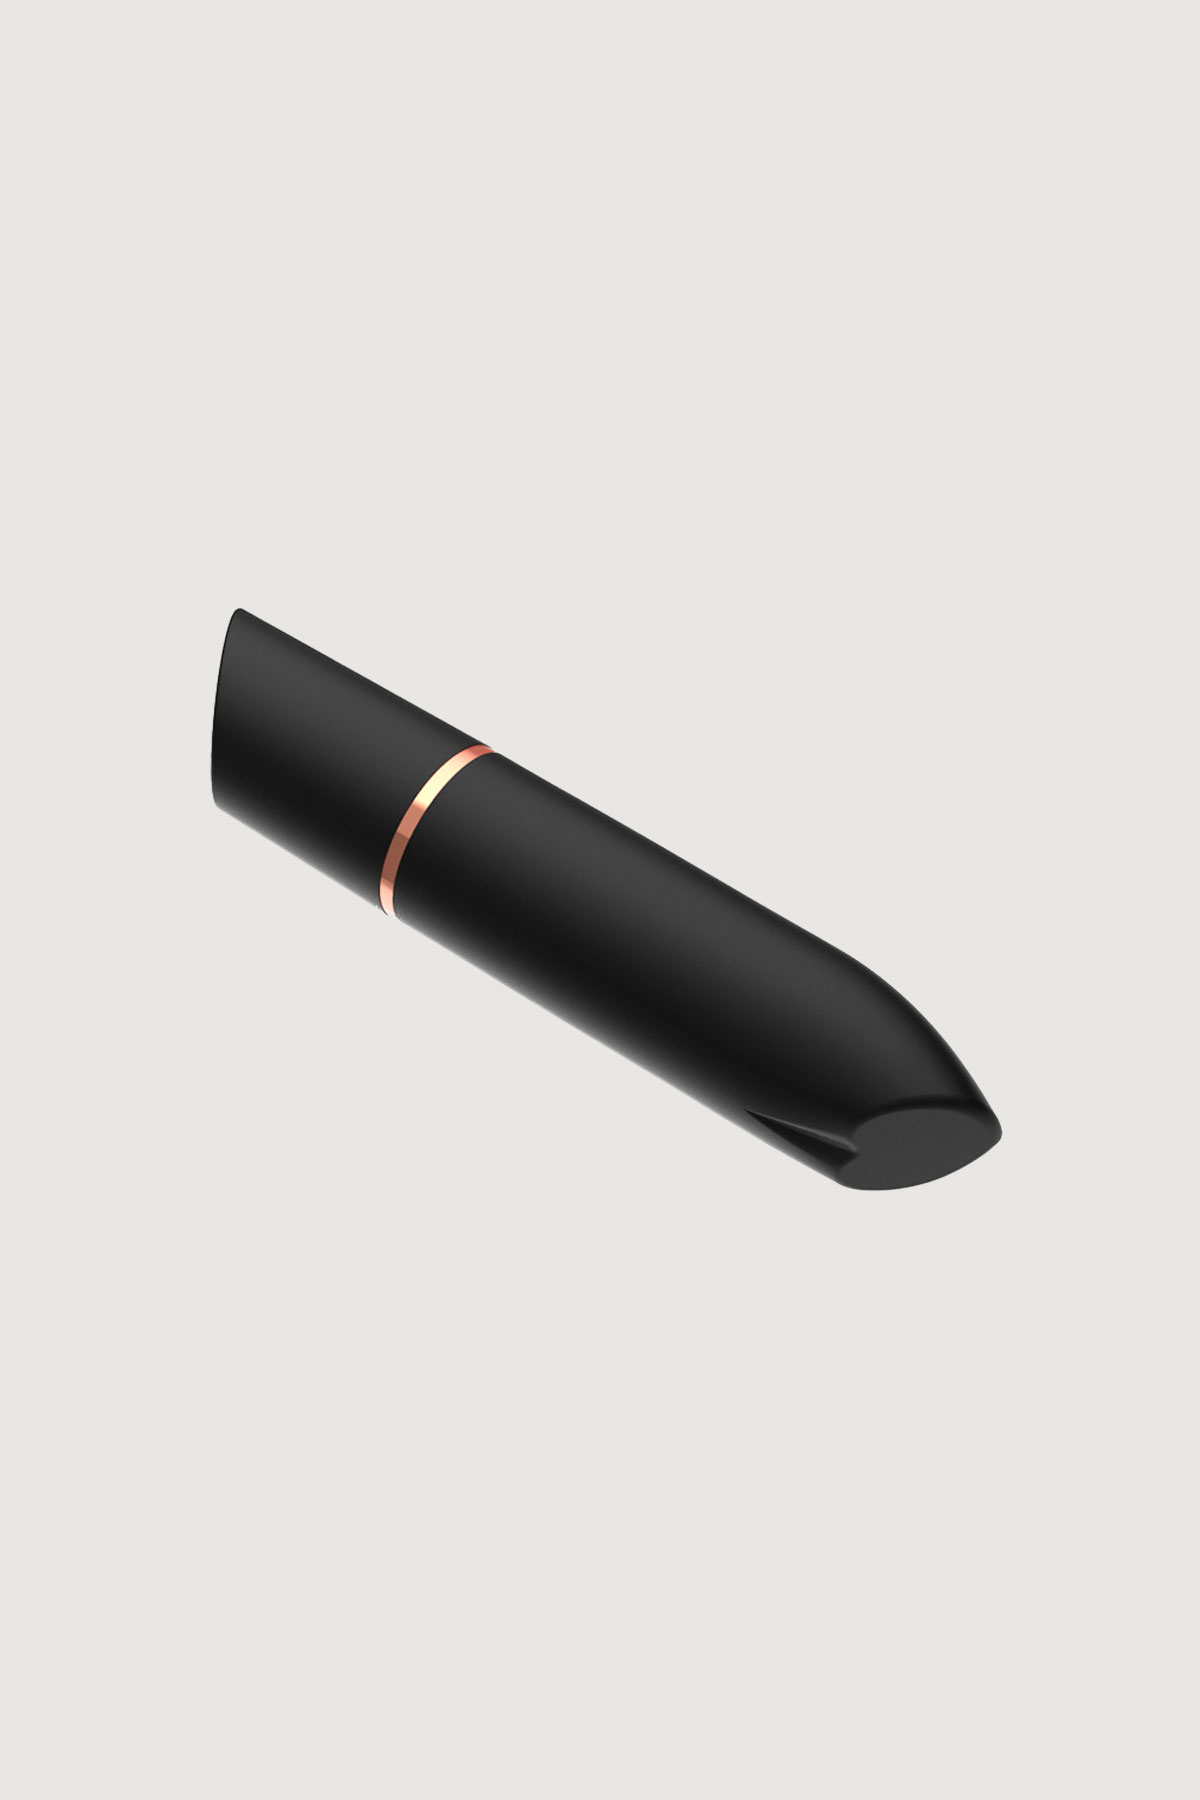 Pallottola vibrante ricaricabile Rocket Adrien Lastic - adrienlastic